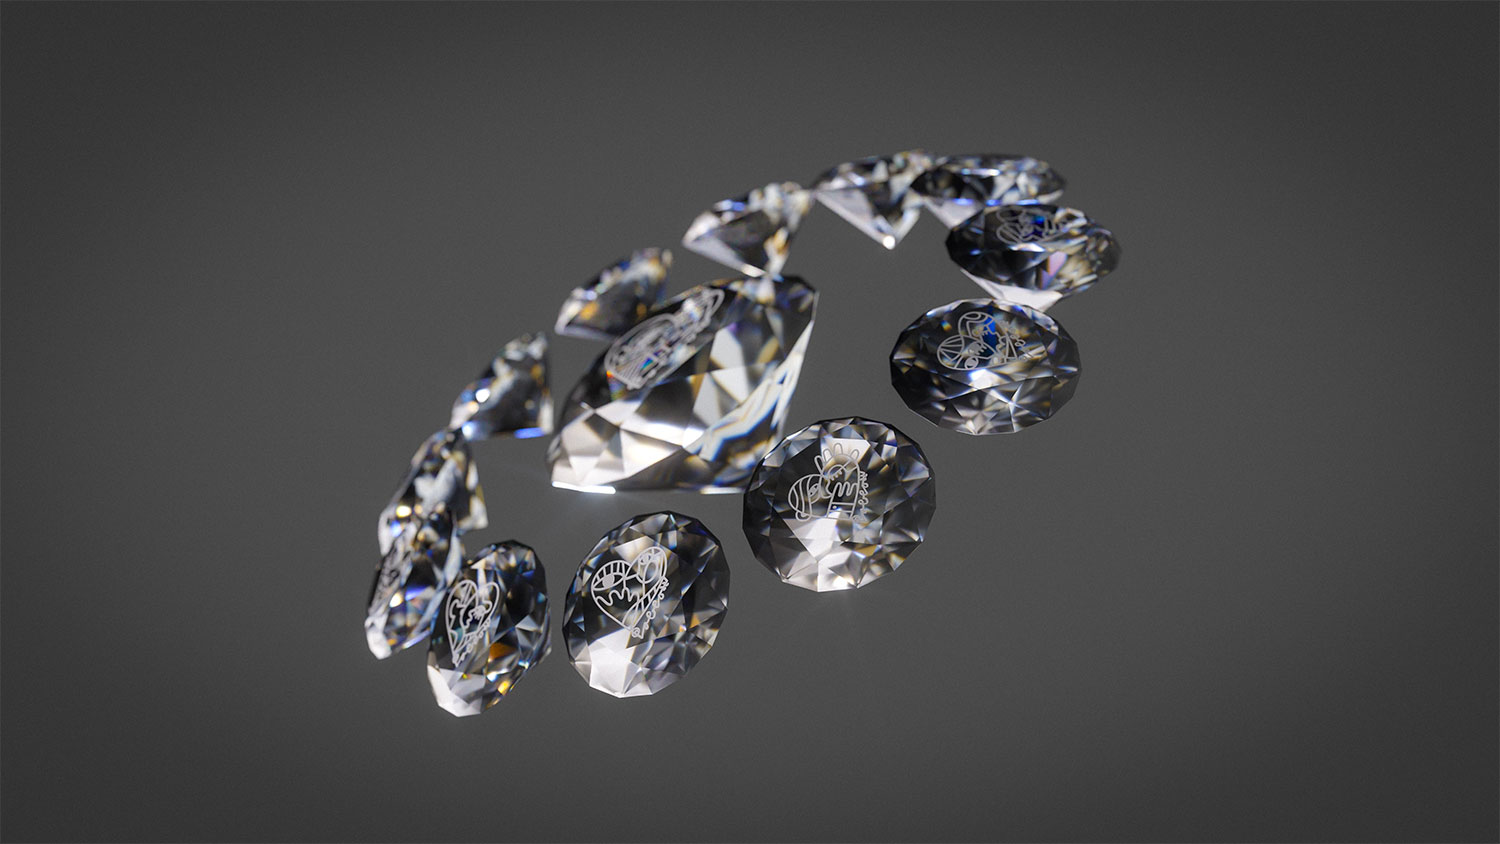 Trophy by Gassan en Pablo Lücker 's werelds kleinste kunstwerk op een diamant ooit